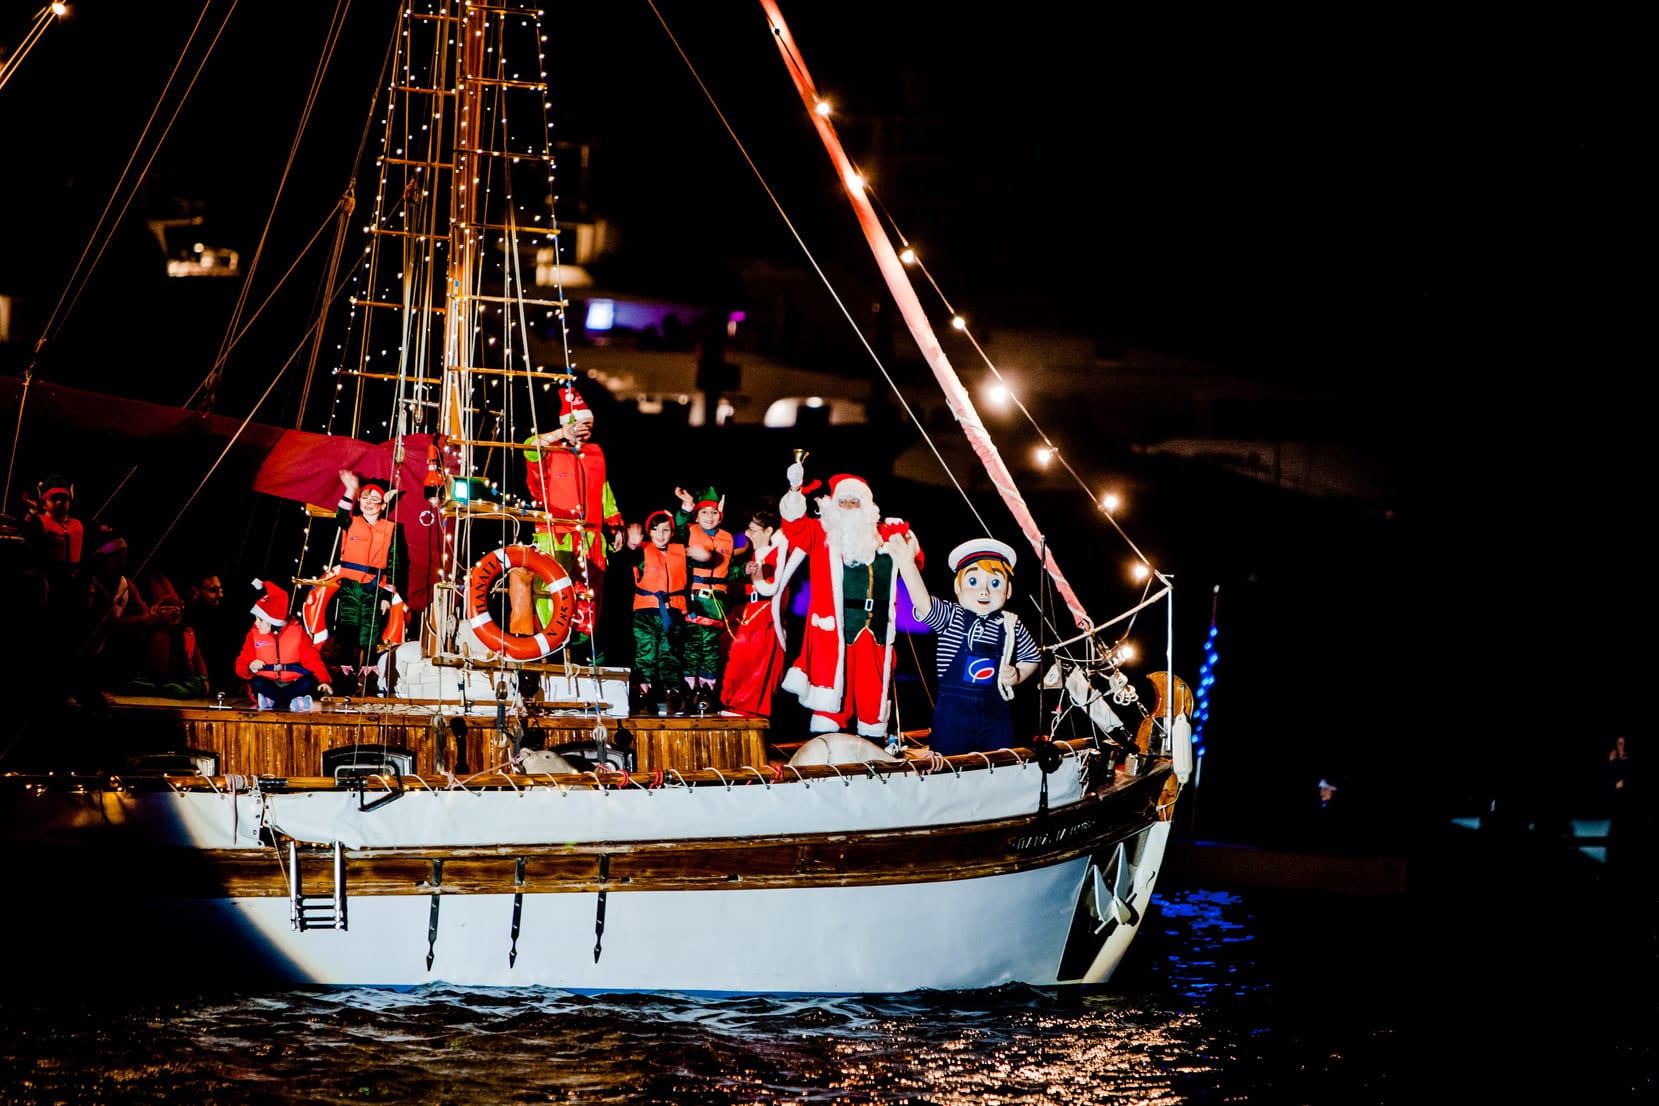 Φωτισμένο χριστουγεννιάτικο καράβι φτάνει στη Μαρίνα Φλοίσβου στην Αθήνα